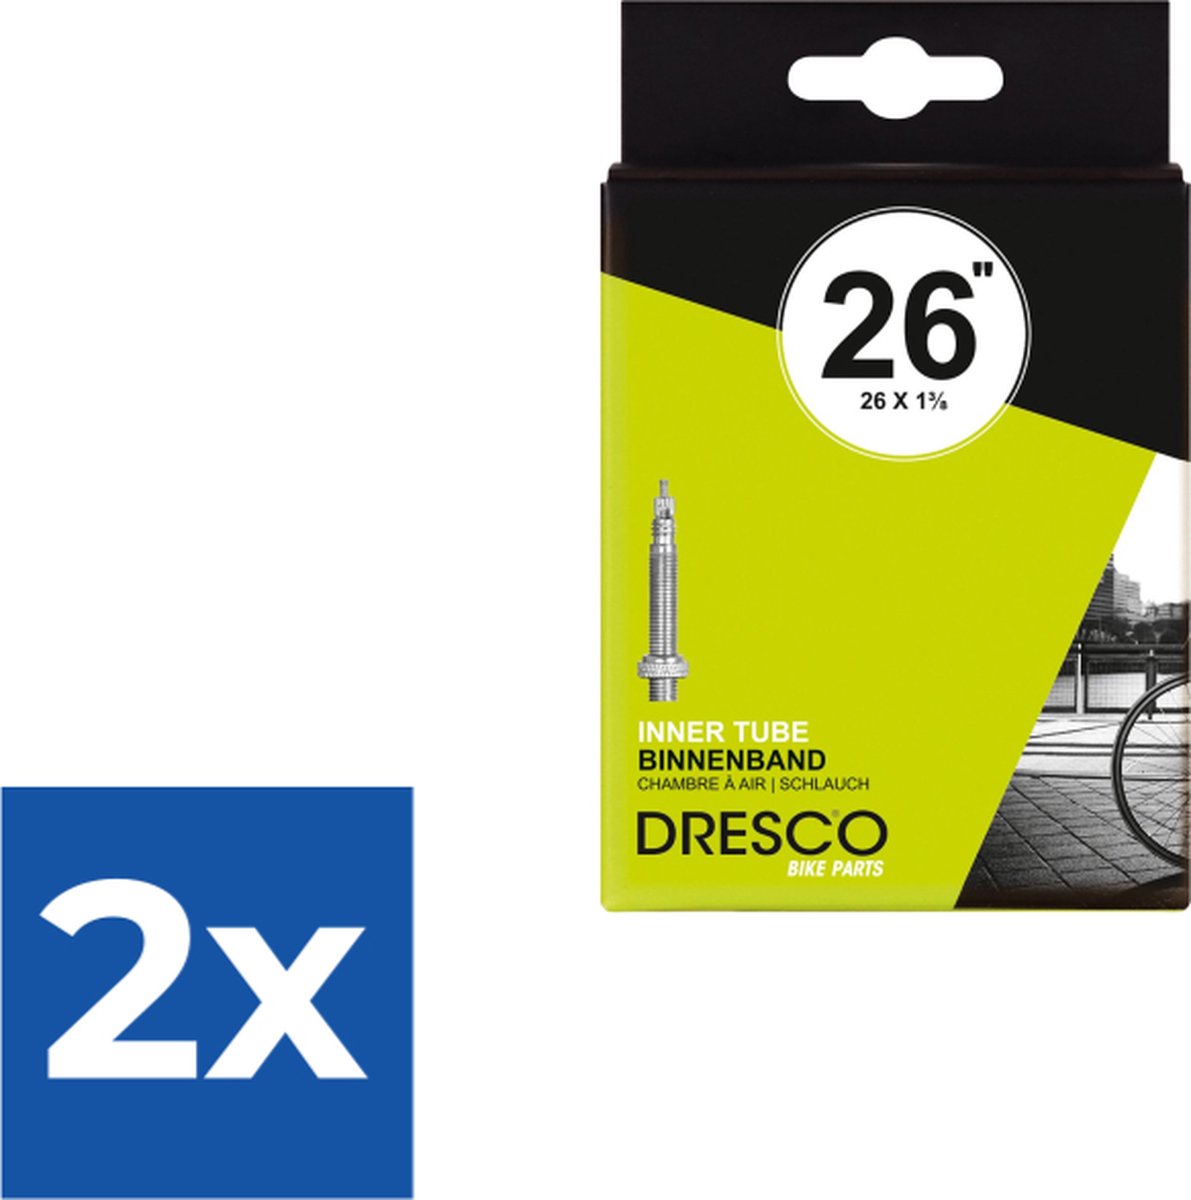 Dresco Binnenband 26 x 1 3/8 (37-590) Presta 32mm - Voordeelverpakking 2 stuks